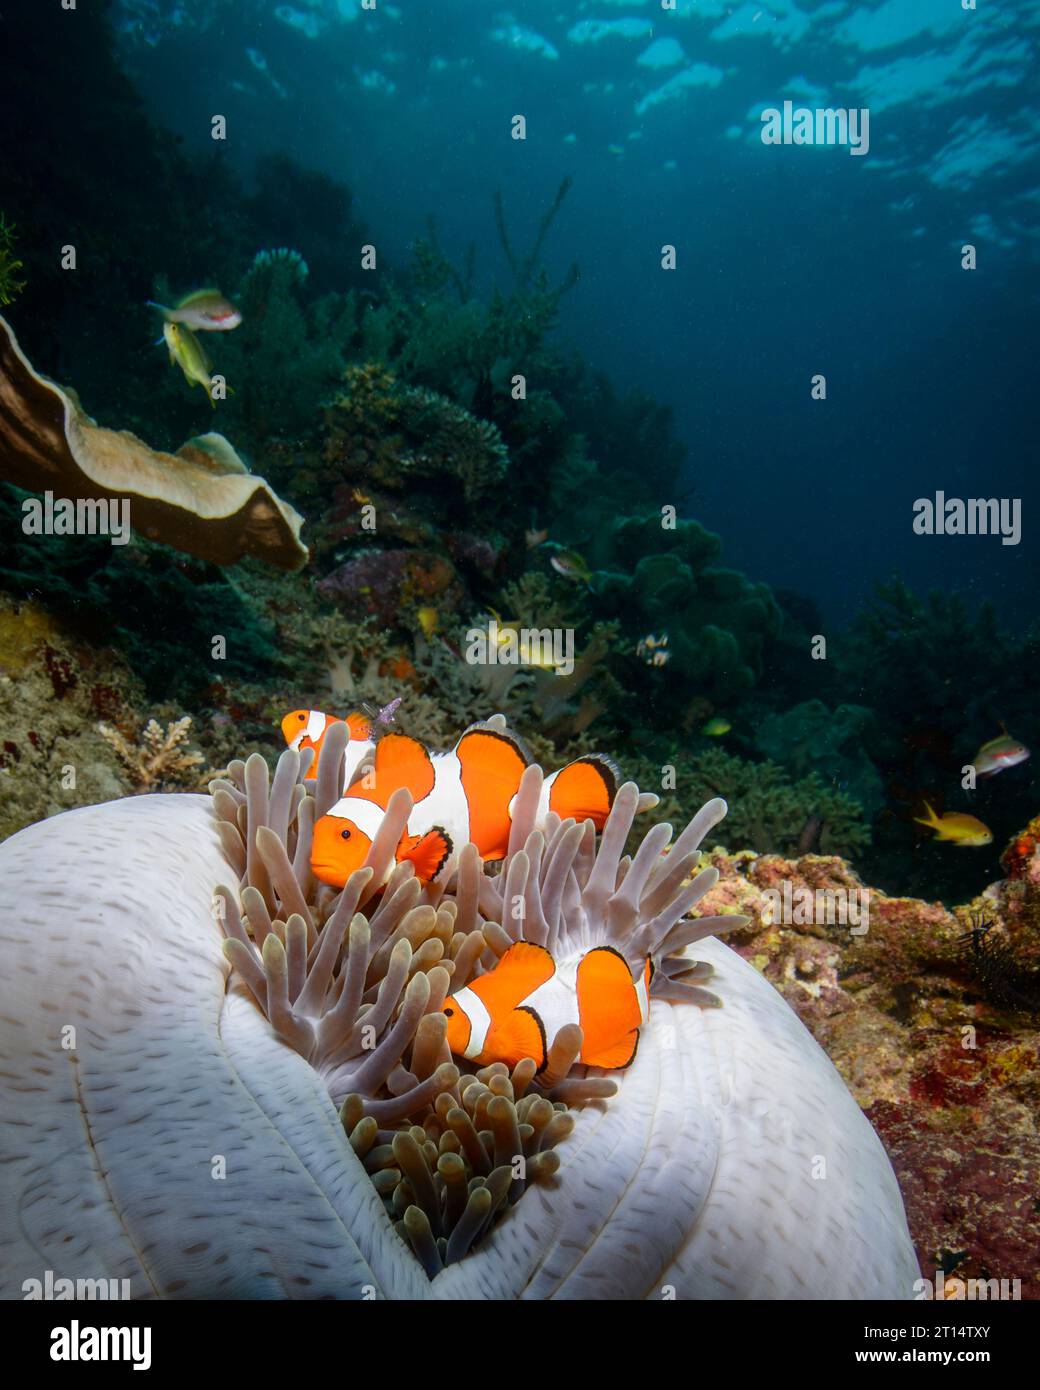 Clown occidentale-anemonefish in anemone sulla barriera corallina Foto Stock